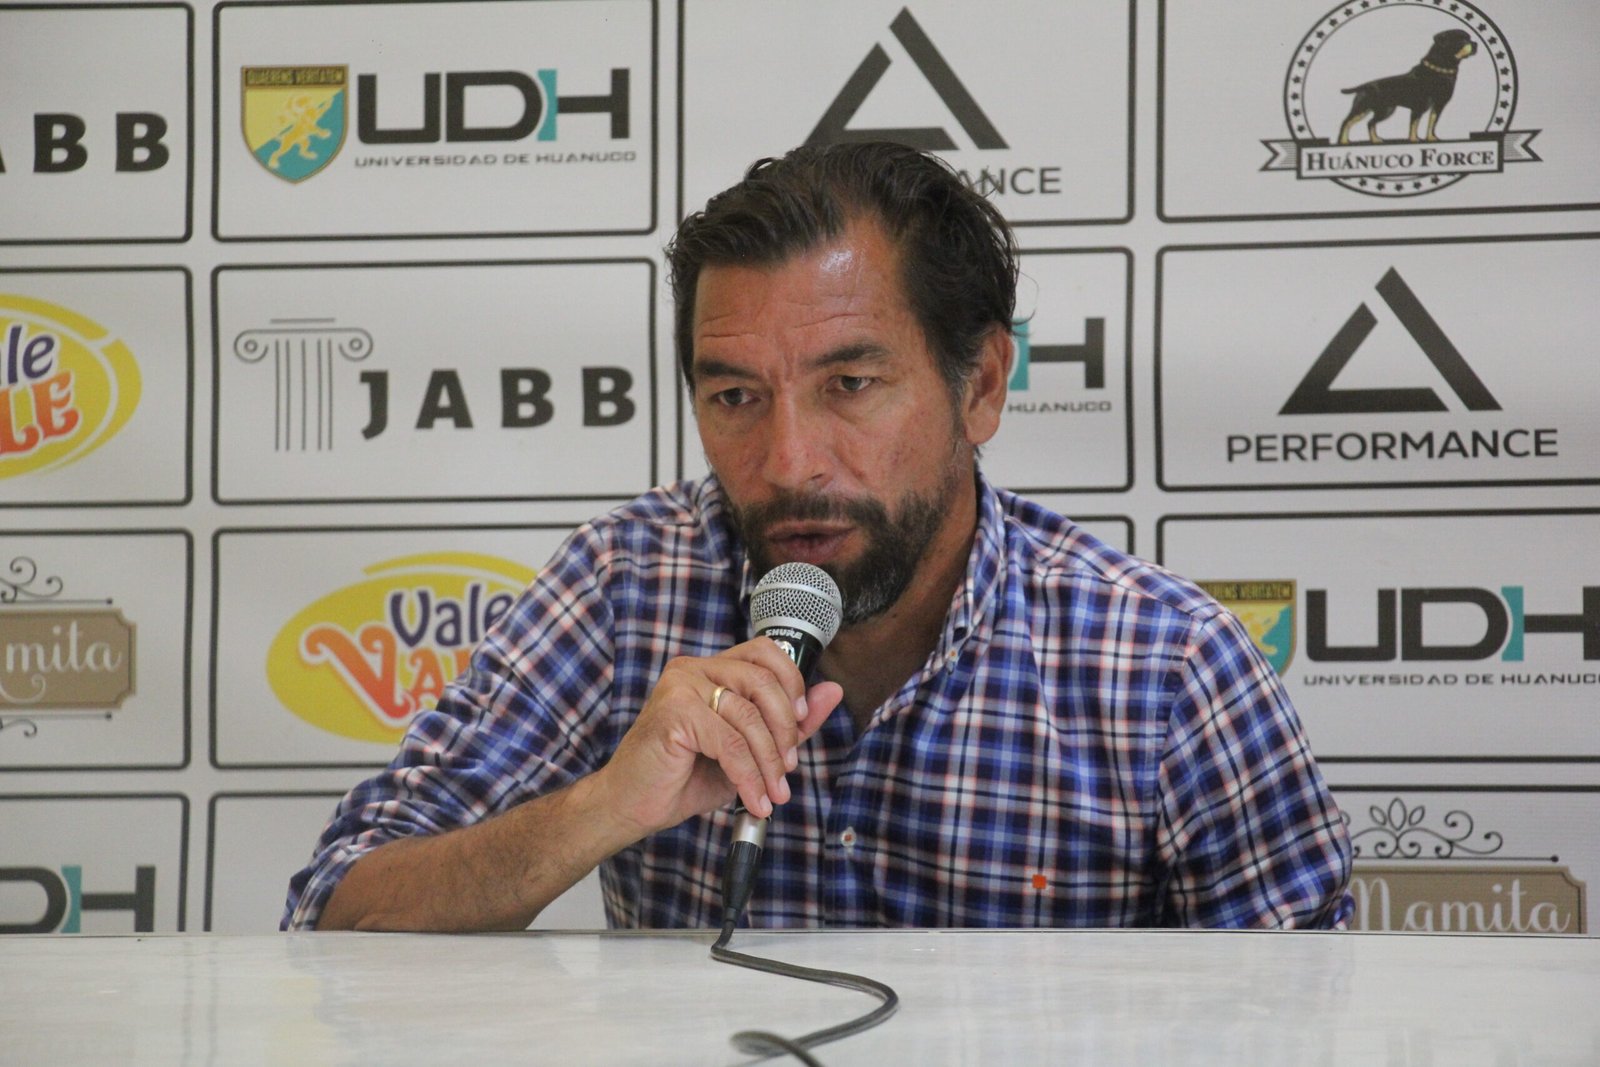 Confía en Guerrero, director técnico de Alianza UDH opinó sobre la Selección Peruana